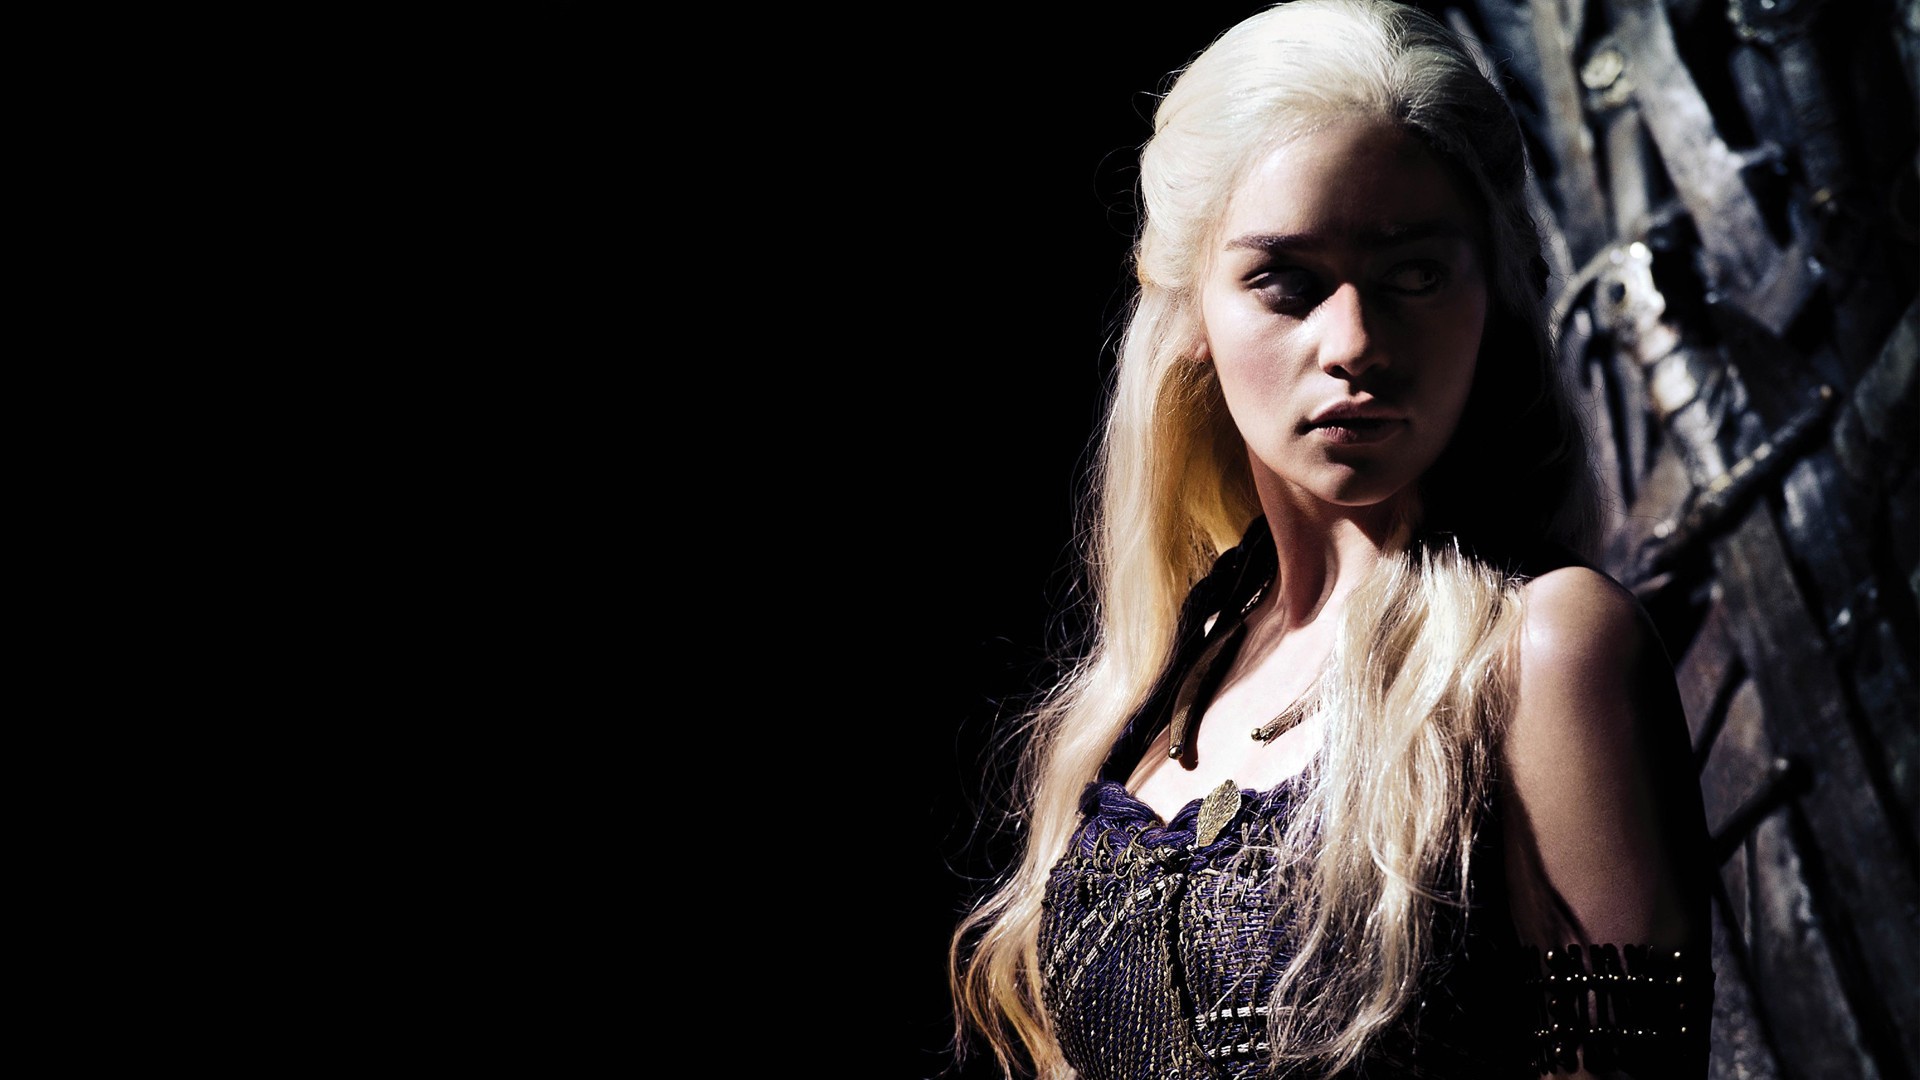 People 1920x1080 Game of Thrones Daenerys Targaryen Emilia Clarke women TV series fantasy girl blonde long hair